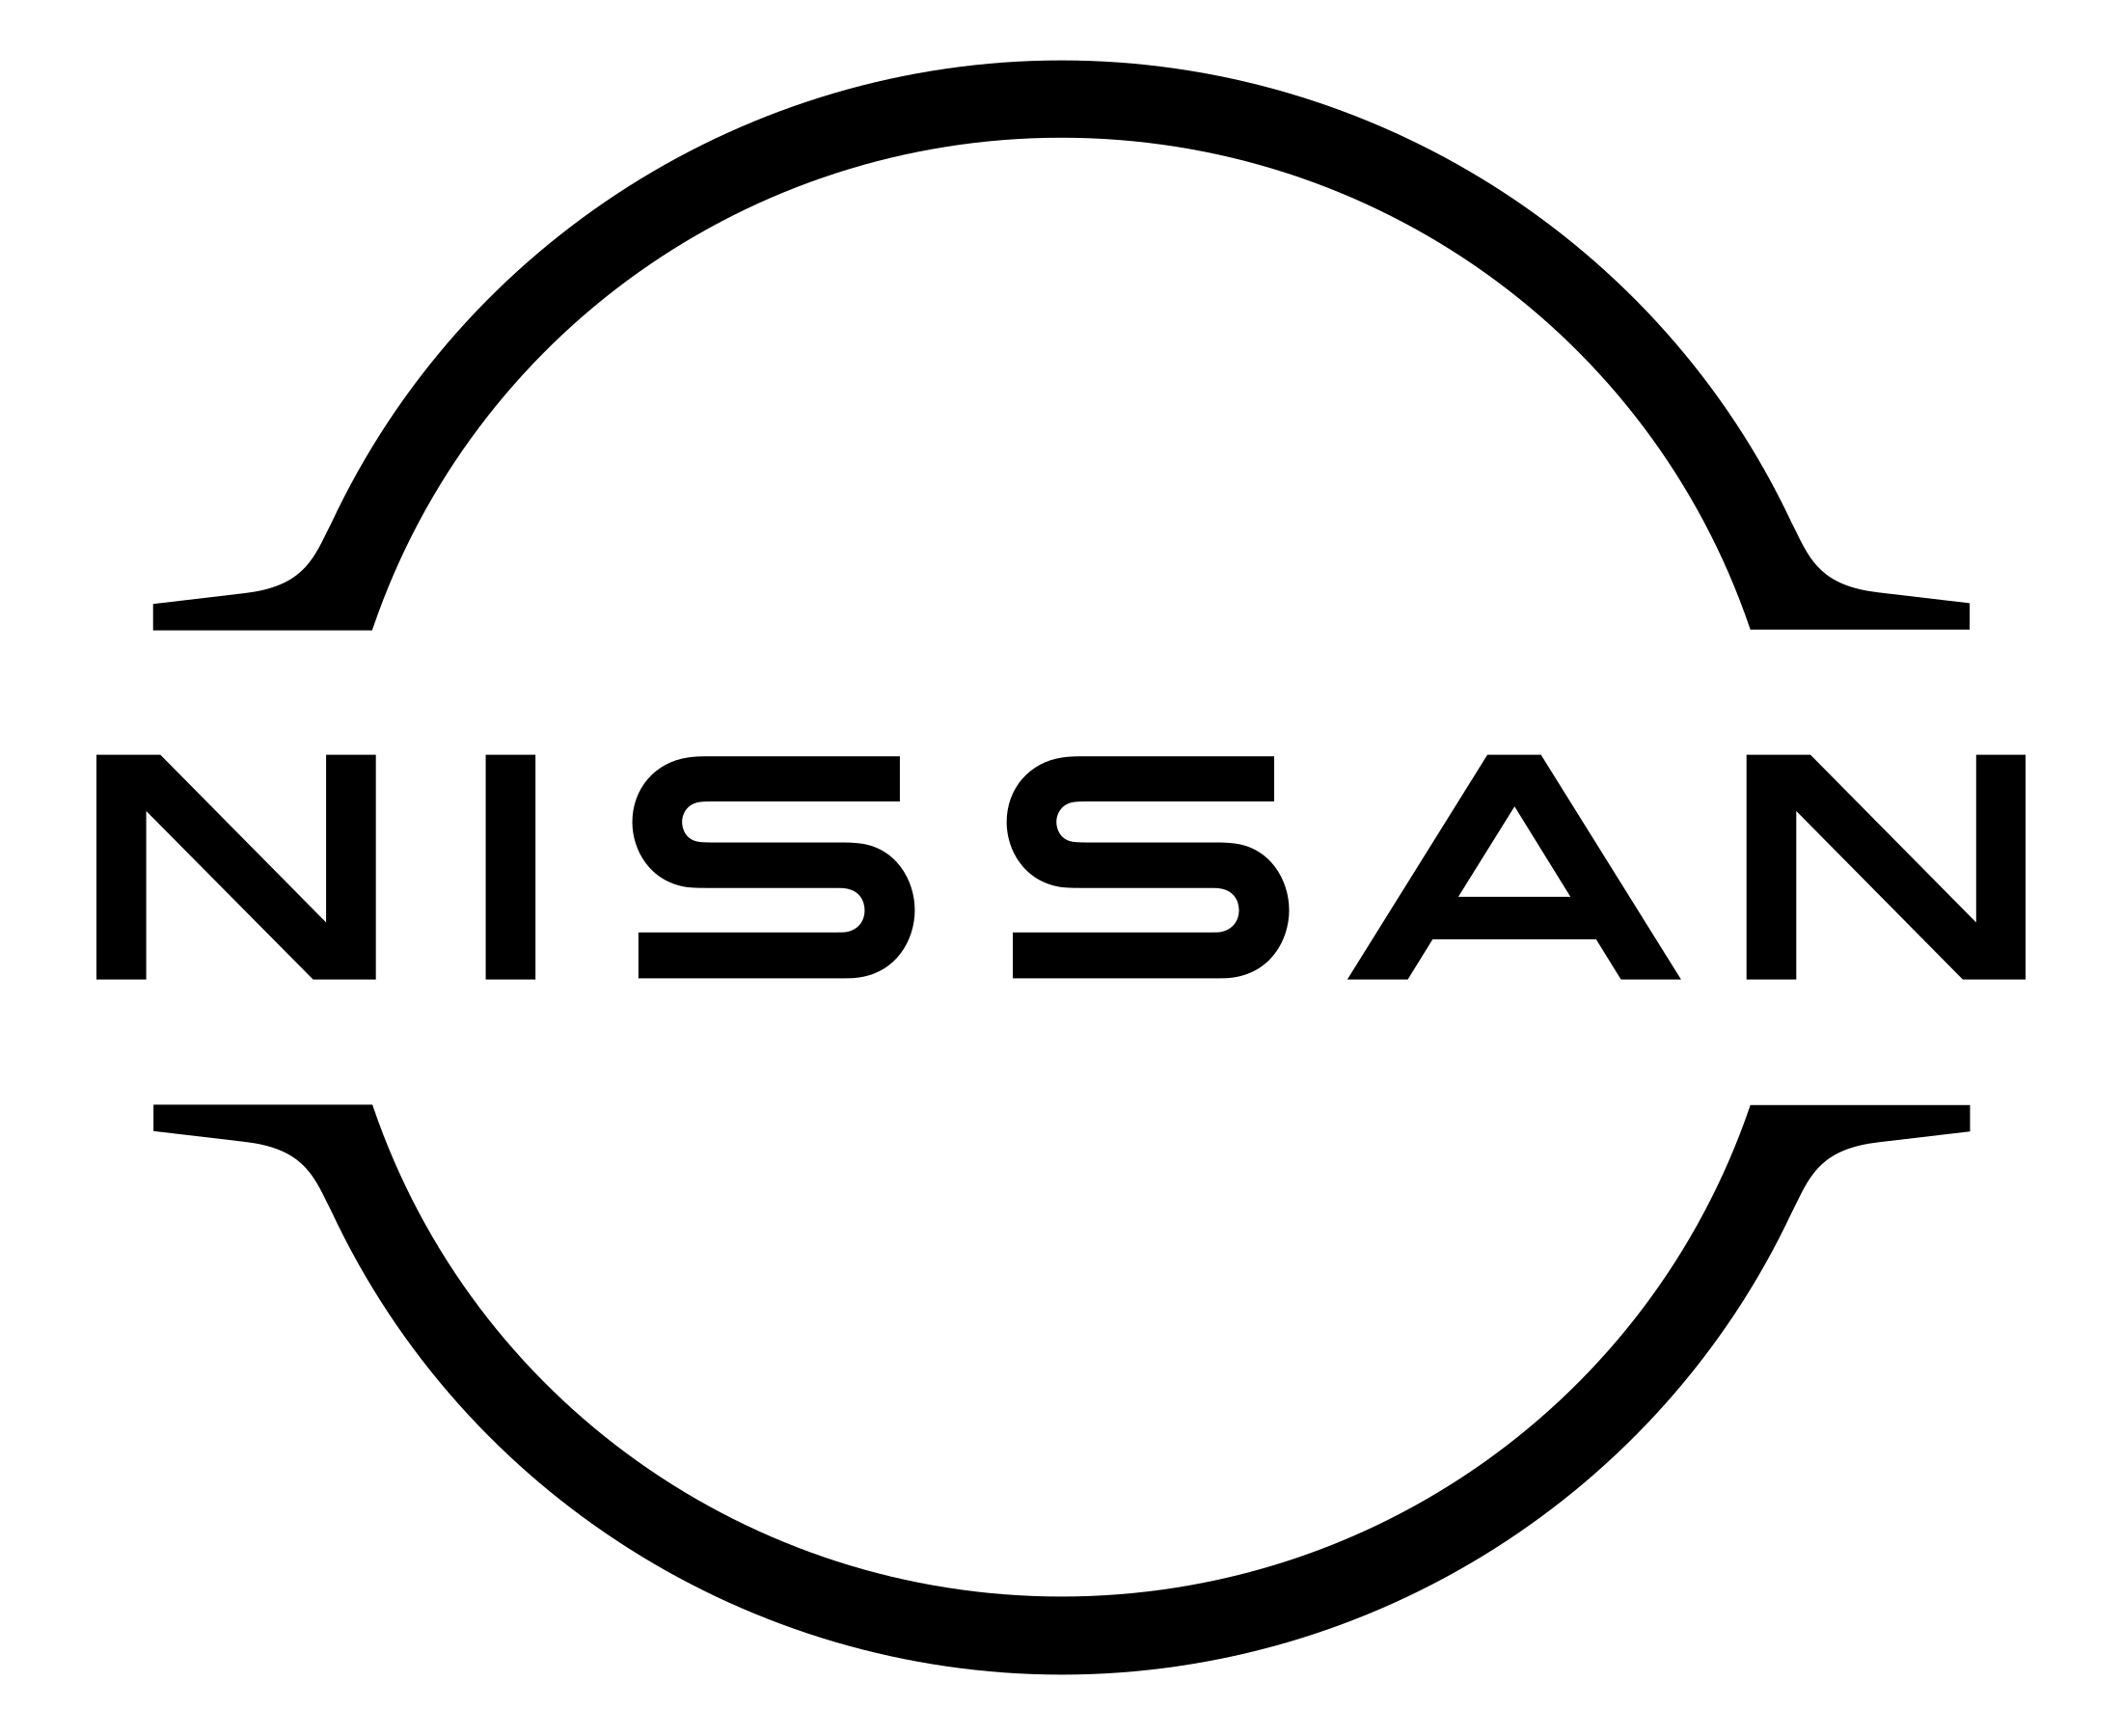 Nissan Logo Transparent Background - KibrisPDR